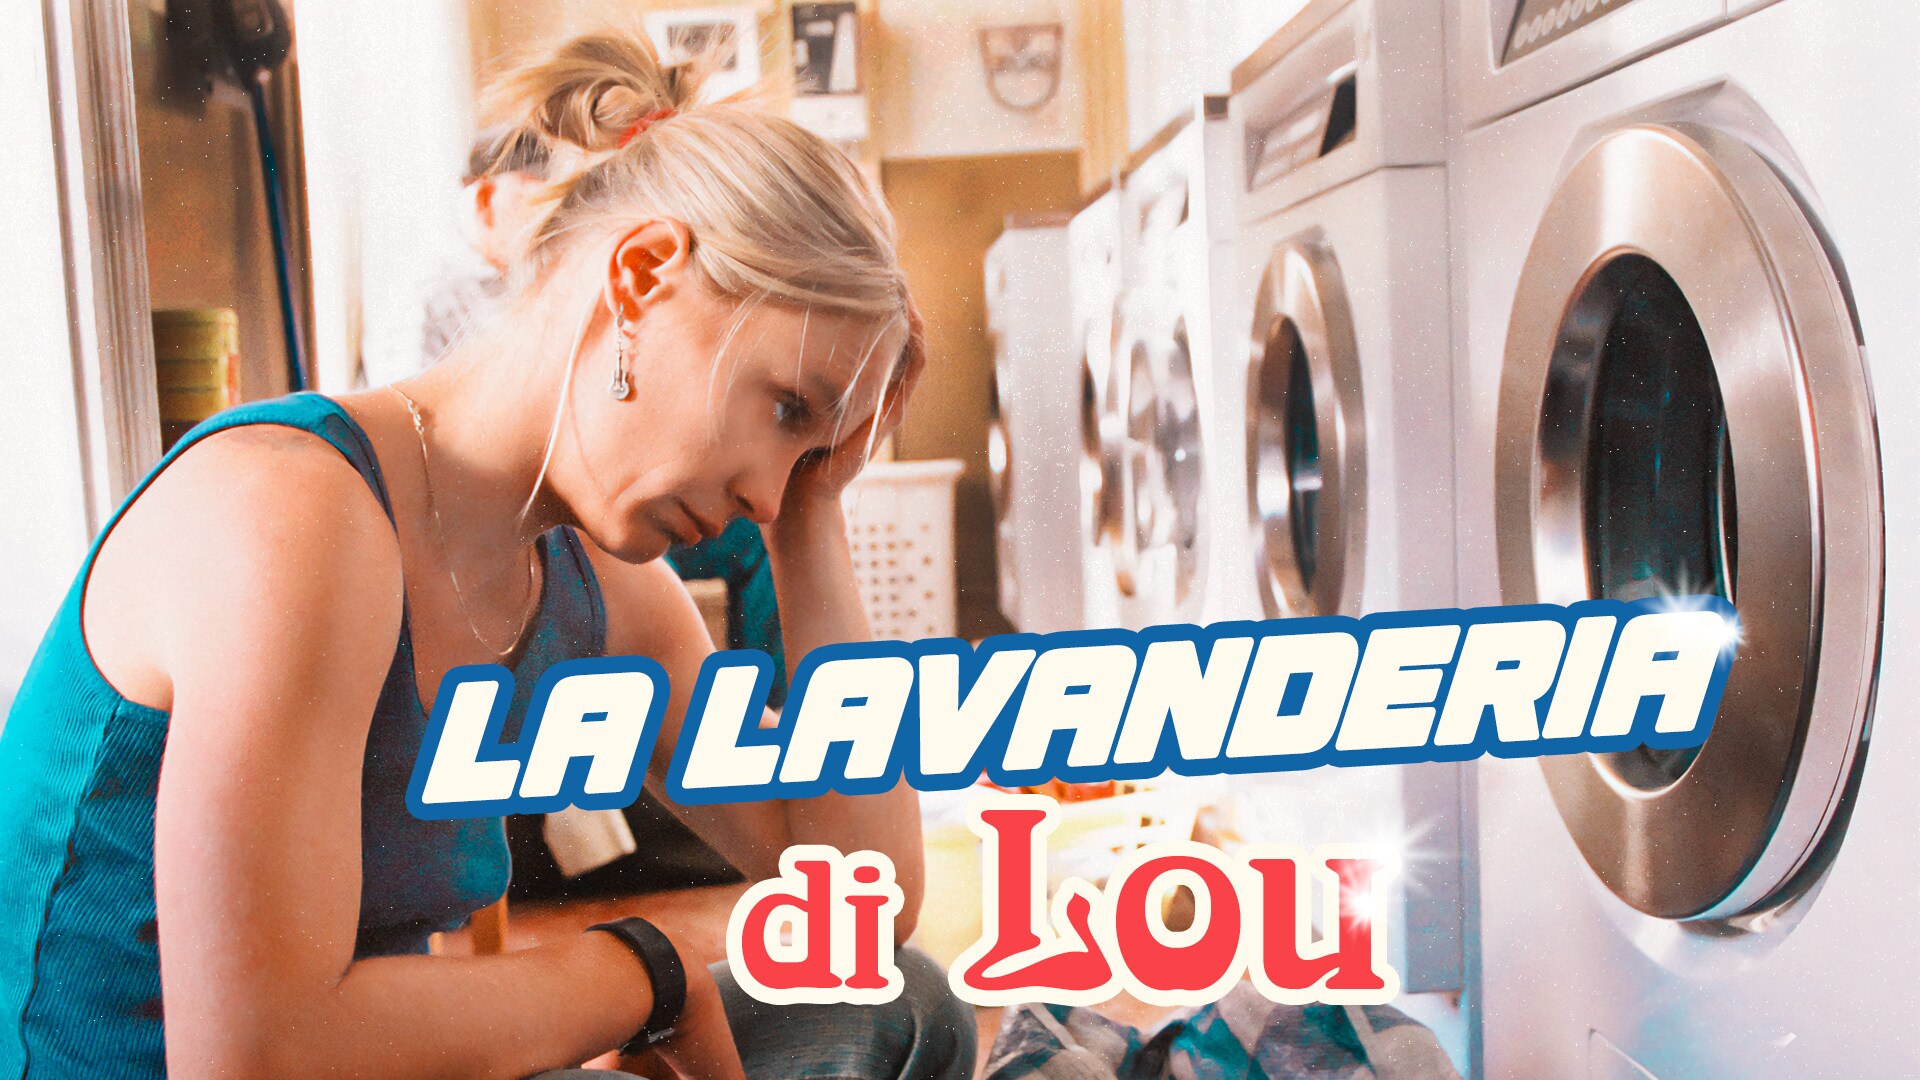 La lavanderia di Lou